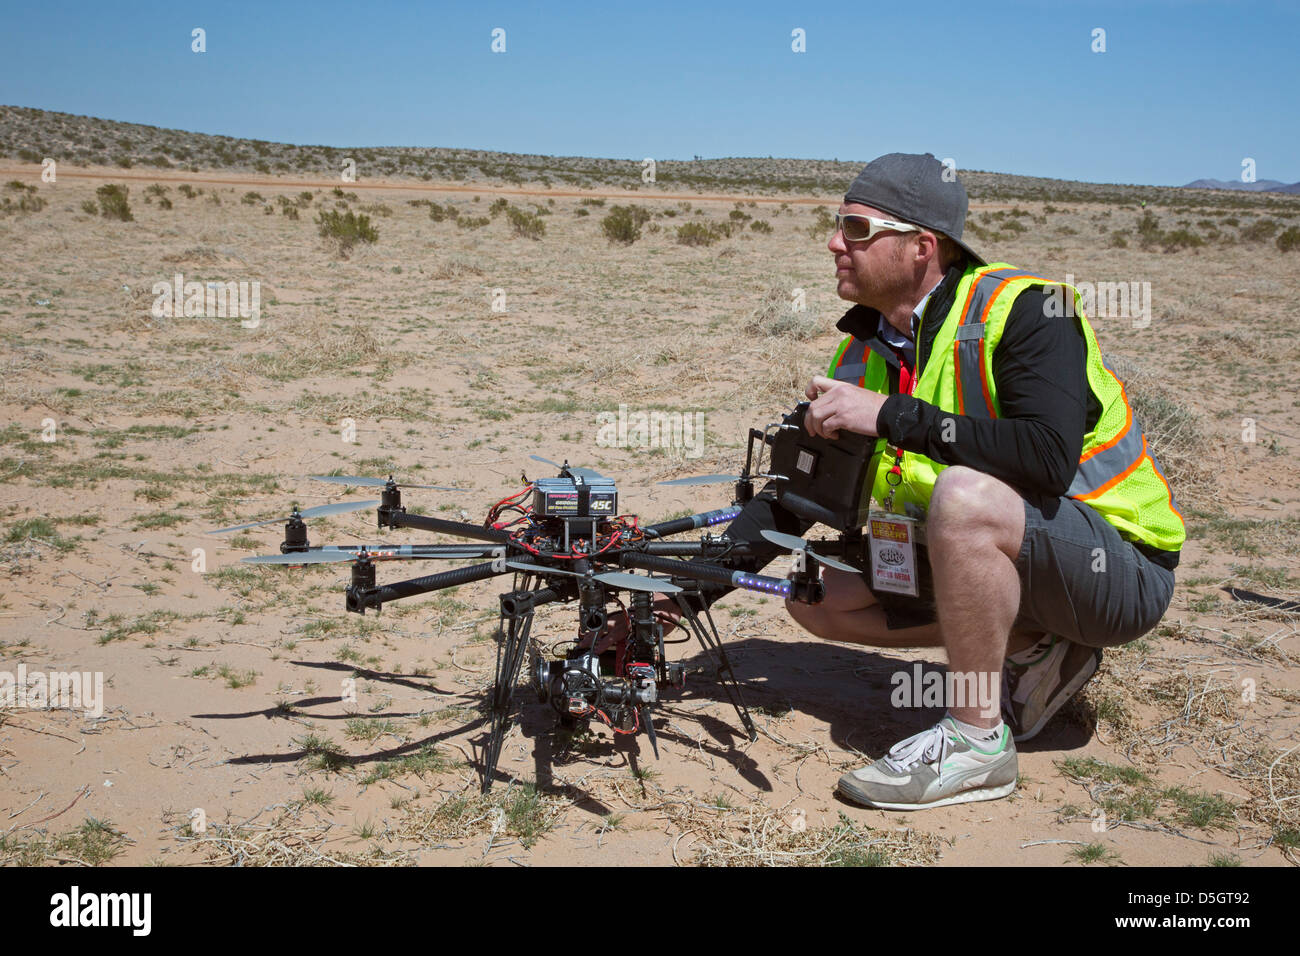 Un photographe s'apprête à lancer un drone pour photographier la Monnaie royale canadienne 400, une course de hors-route dans le désert de Mojave. Banque D'Images